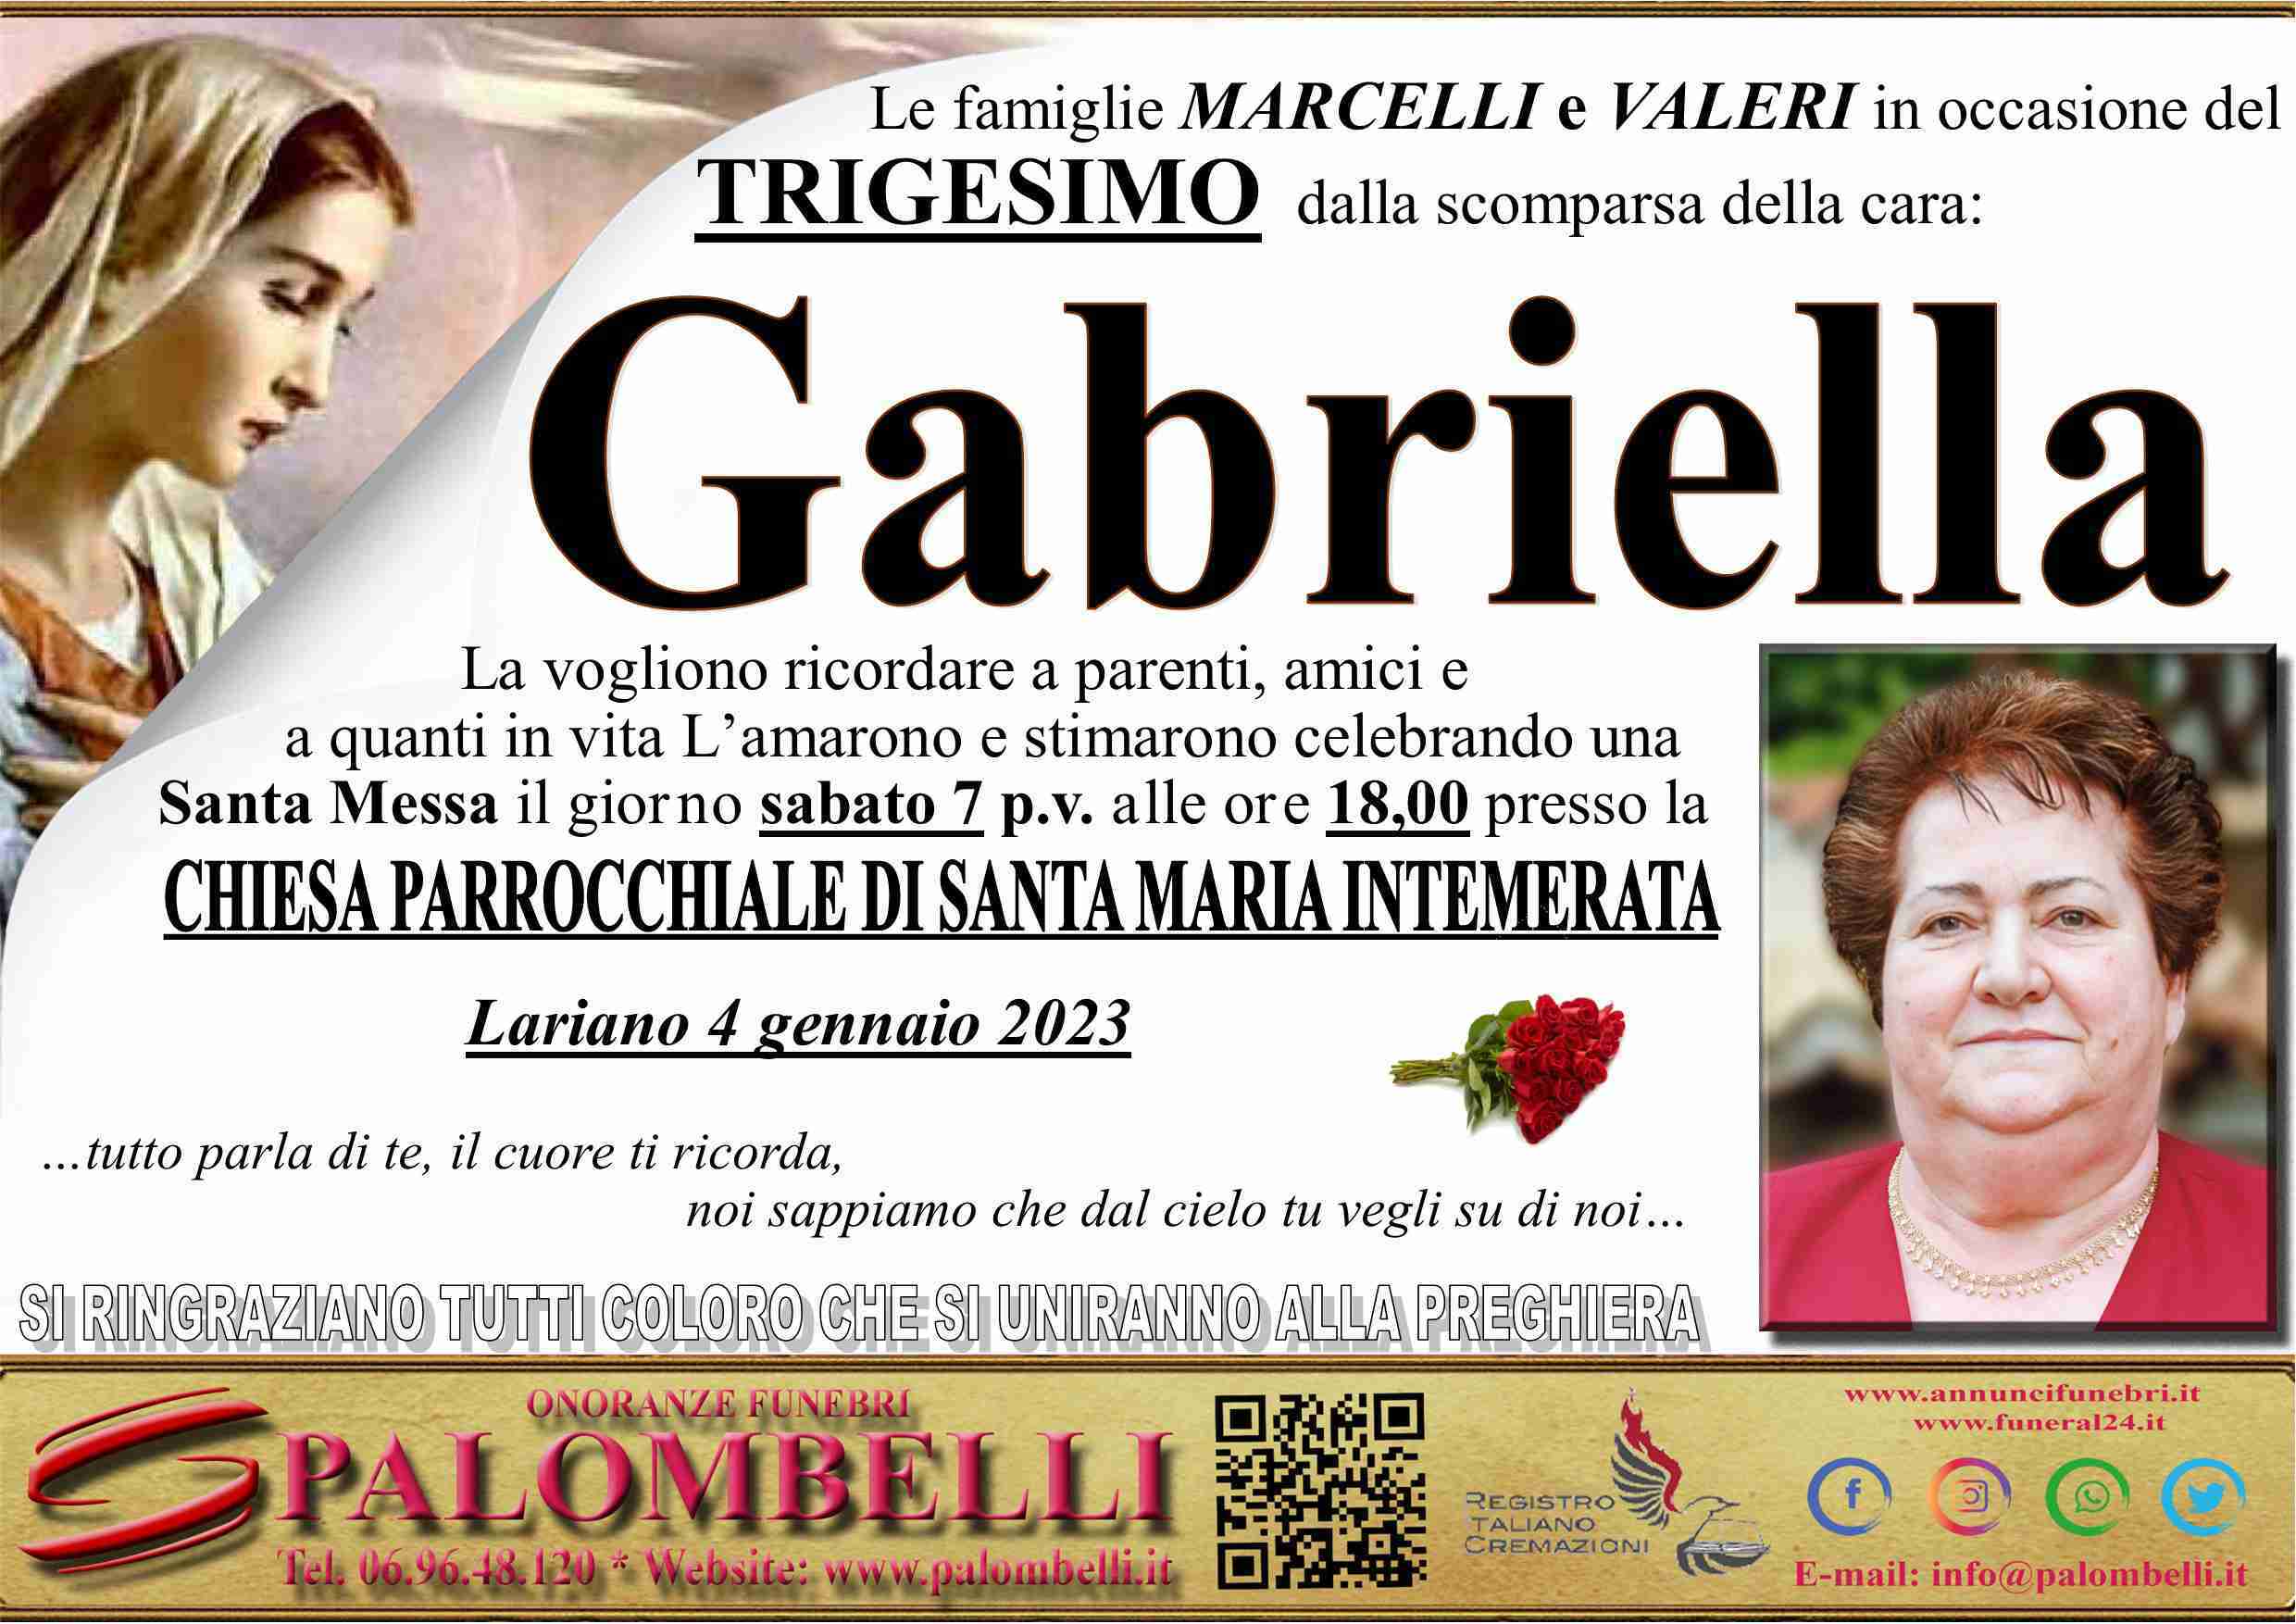 Gabriella Marcelli